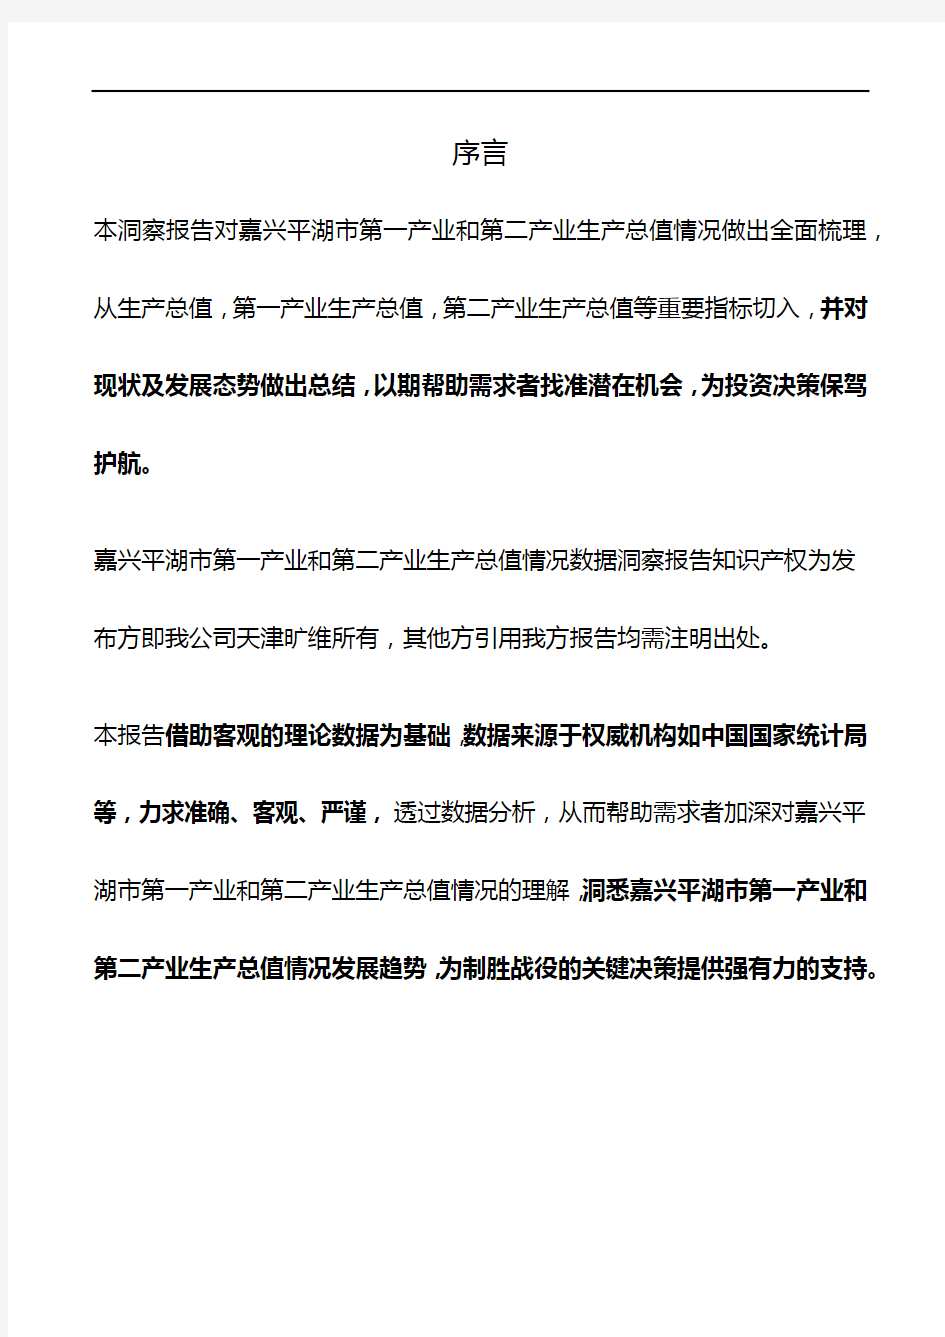 浙江省嘉兴平湖市第一产业和第二产业生产总值情况数据洞察报告2019版